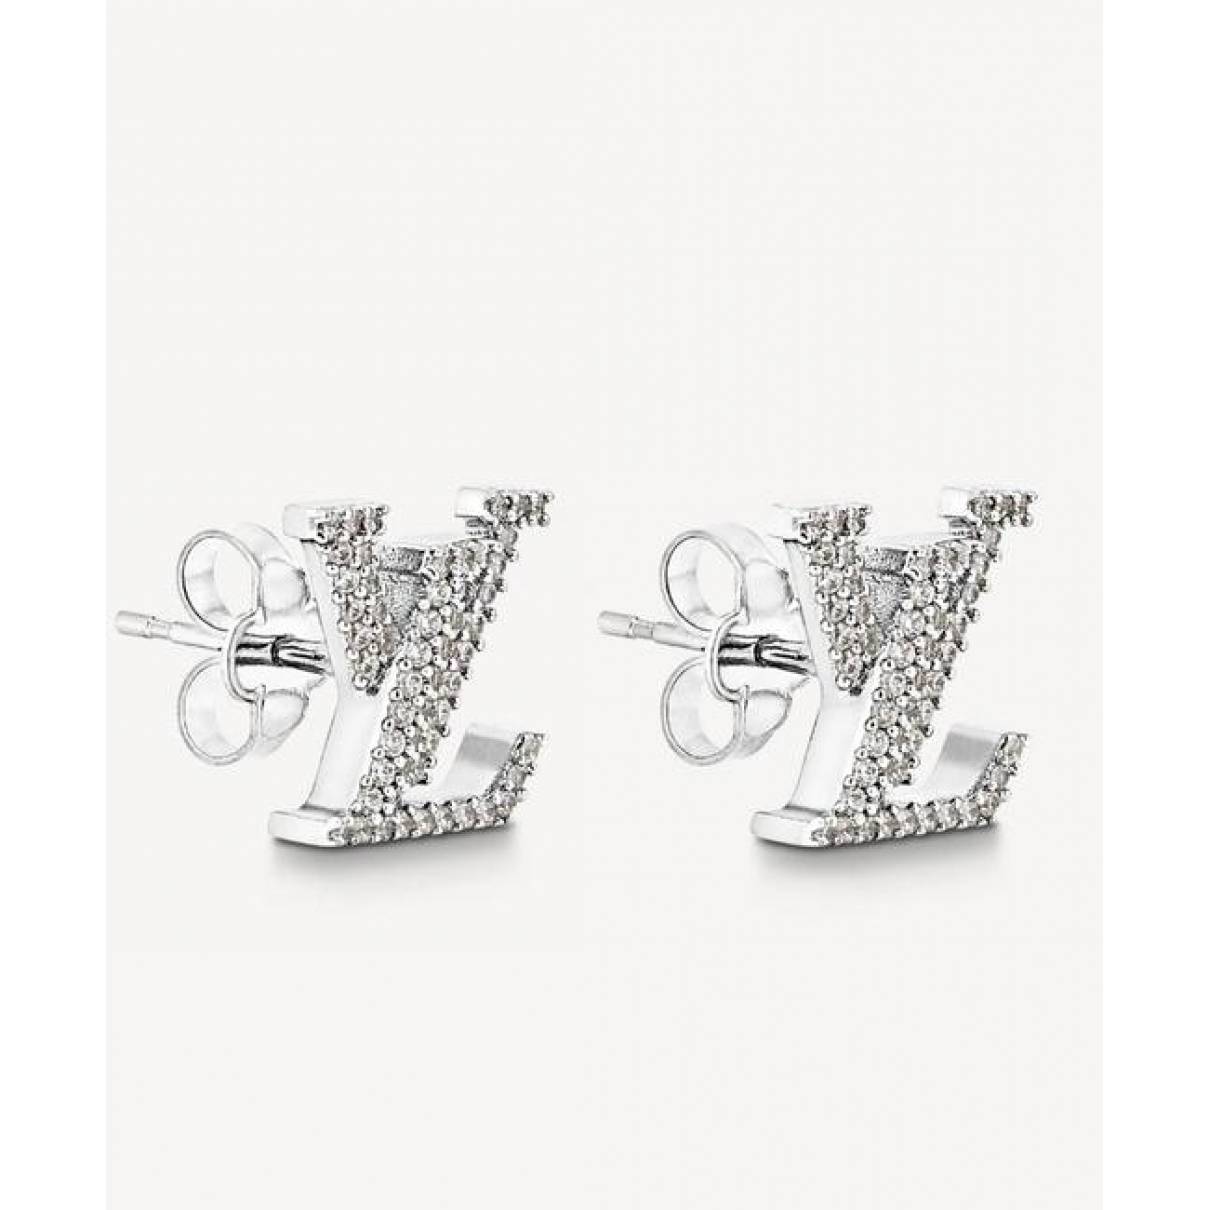 Silver earrings Louis Vuitton Silver in Silver - 25311256